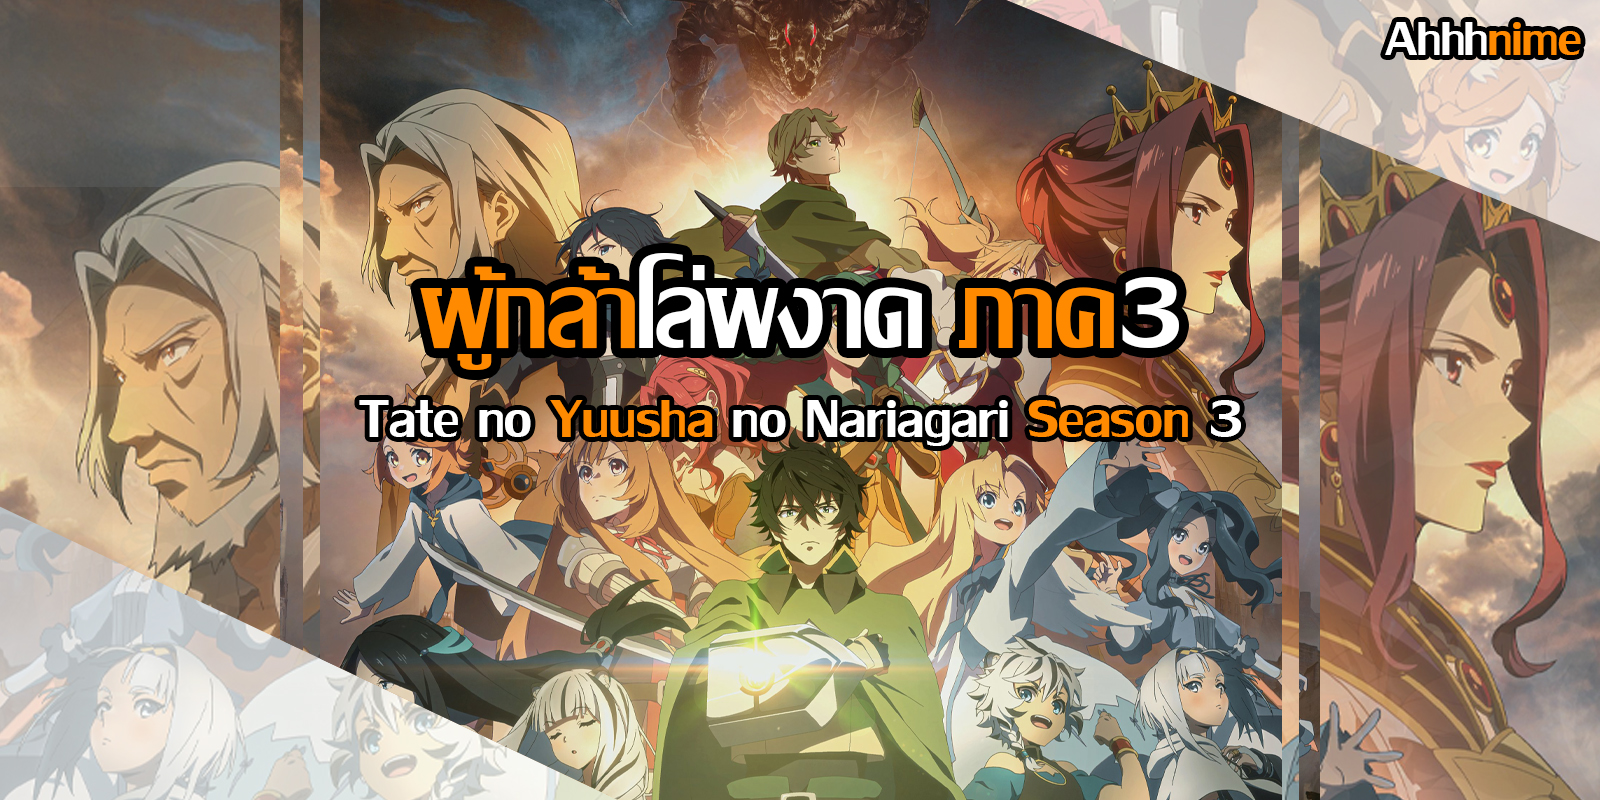 Tate no Yuusha no Nariagari Season 3 